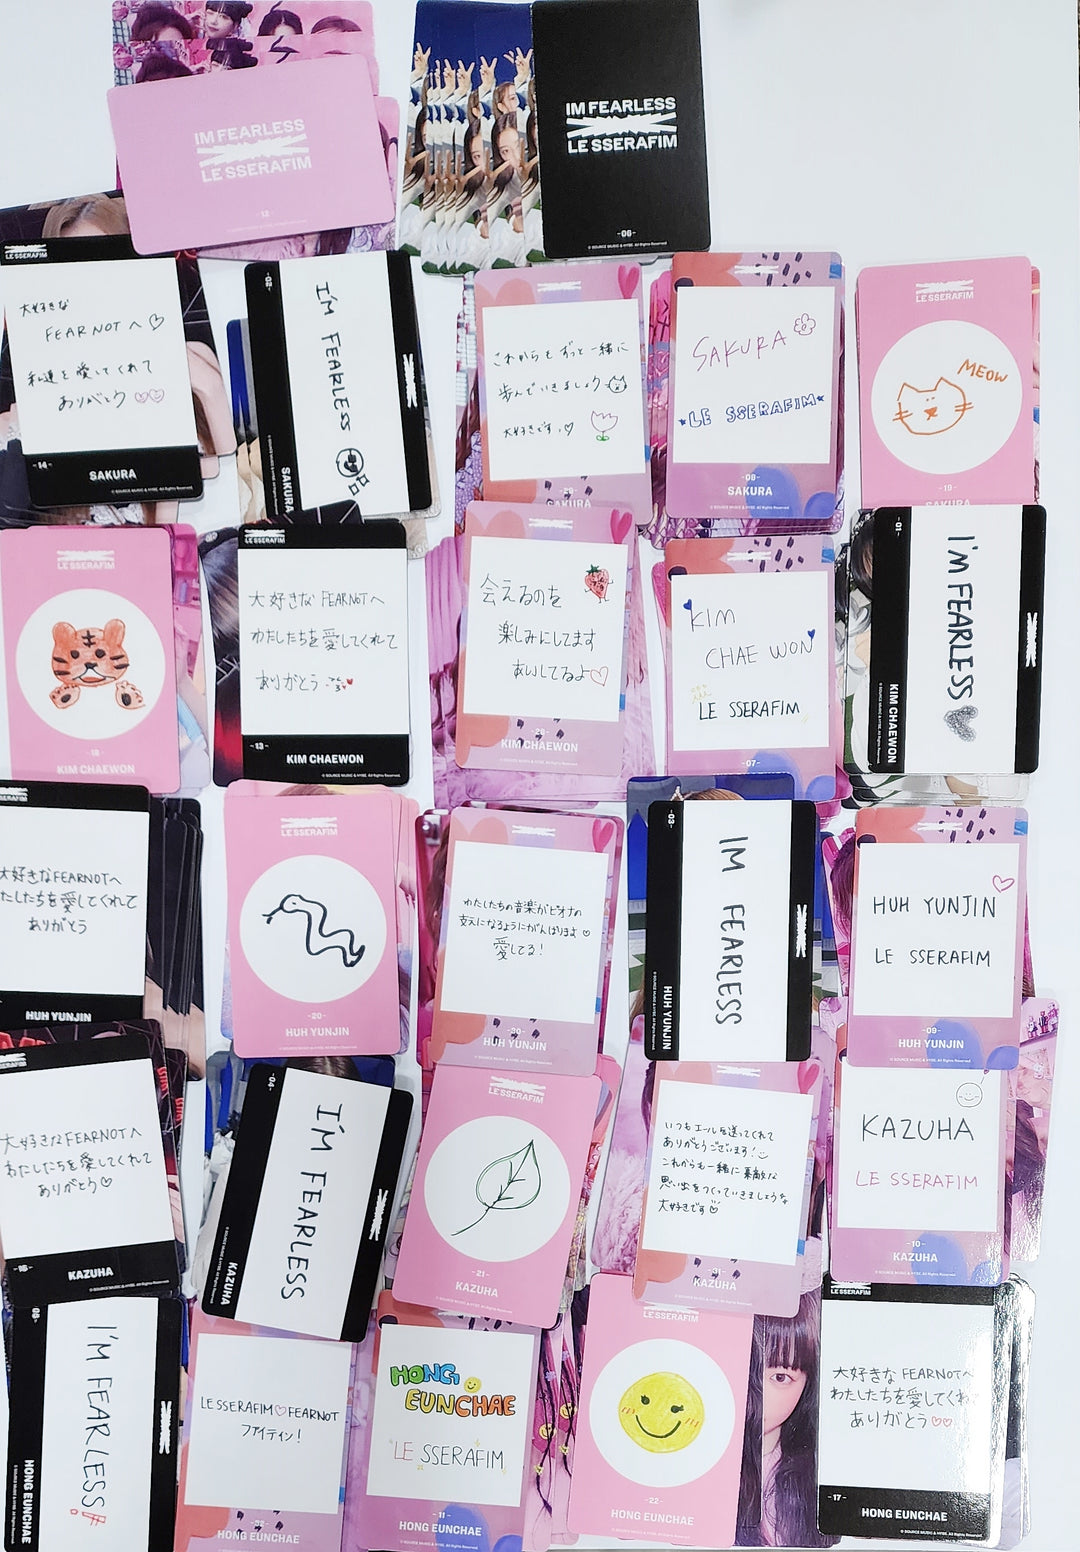 Le Sserafim JAPAN 1ST SINGLE FEARLESS - Trading random photocards